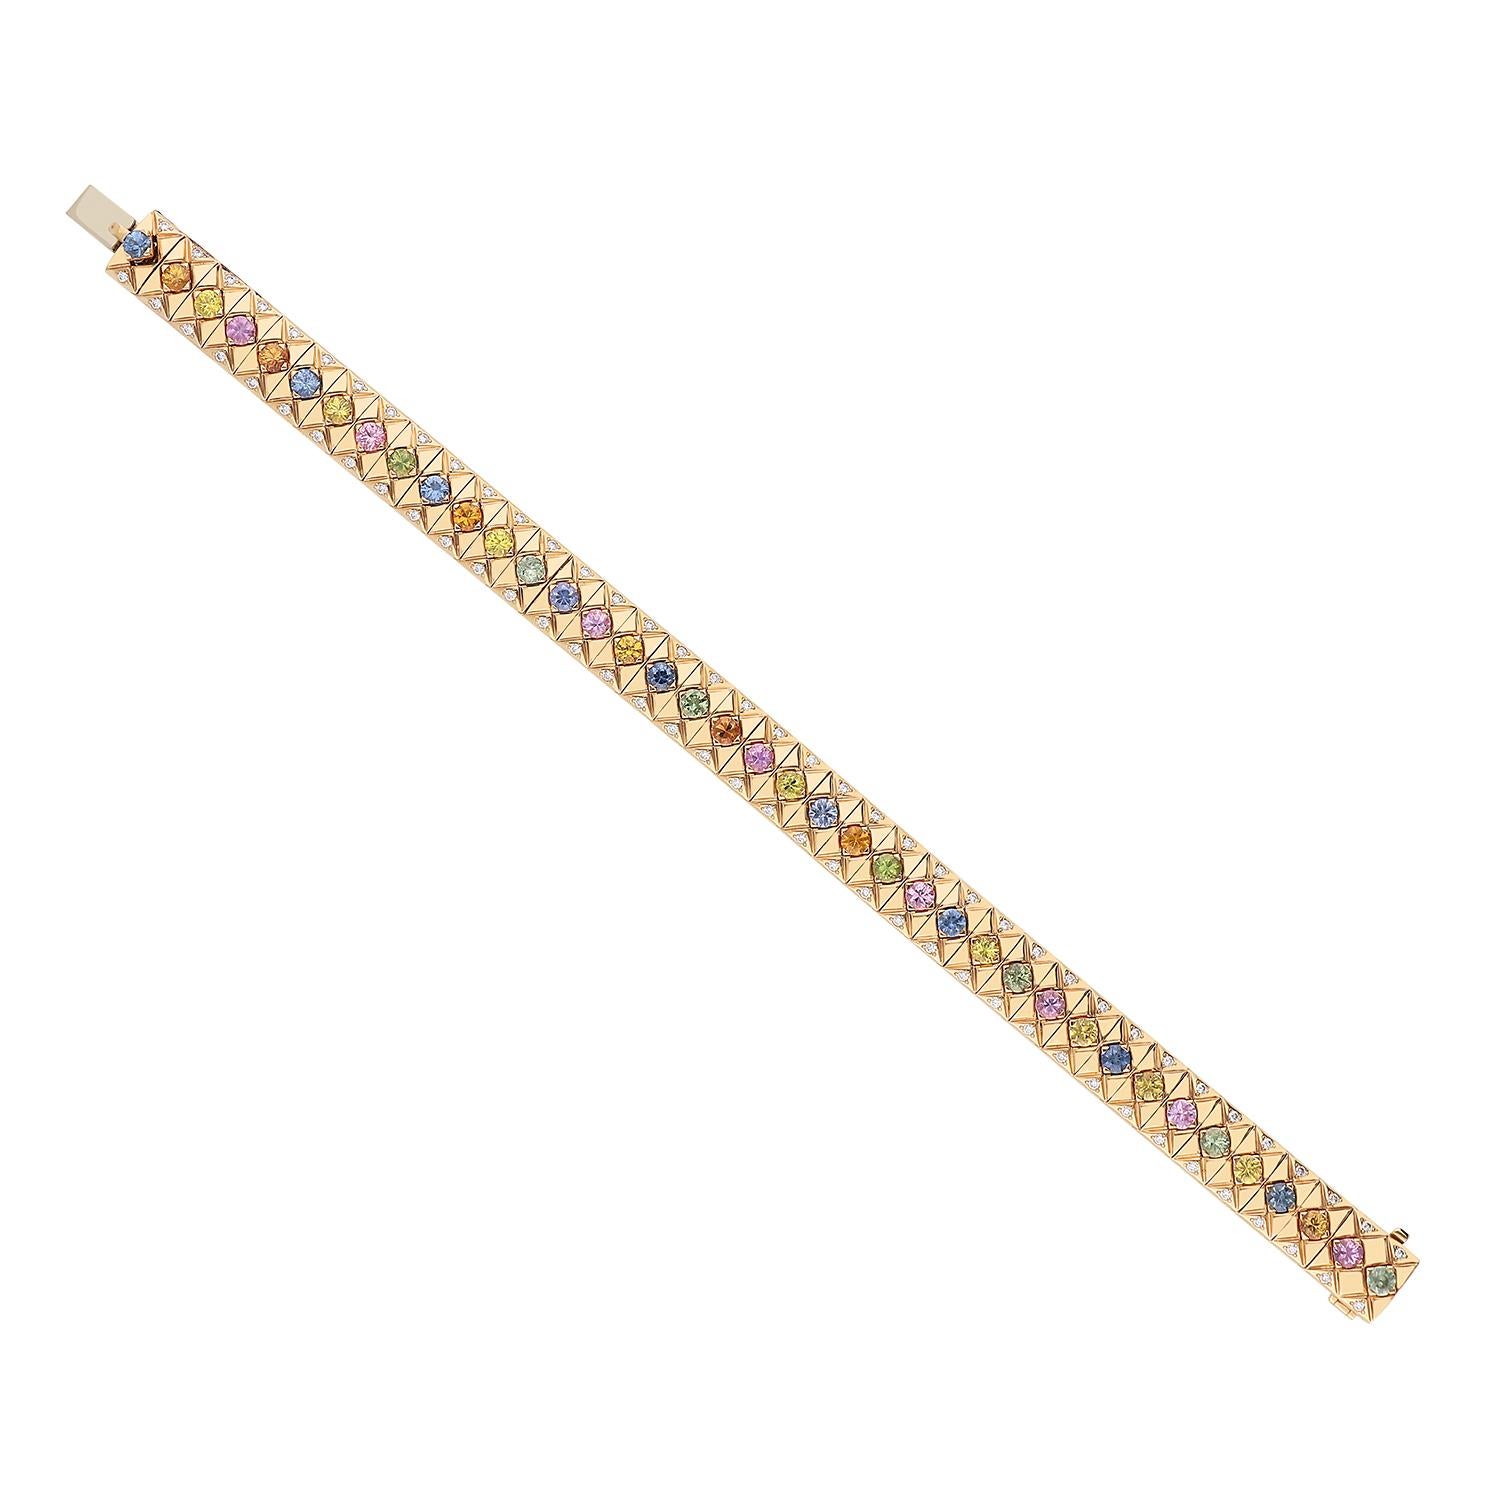 Magnifique bracelet en or rose 18 carats pesant au total 39,30 grammes et contenant 5,56 carats de saphirs multicolores taillés en brillant et sertis sur des pointes plates. De part et d'autre de chaque saphir se trouvent des diamants de taille